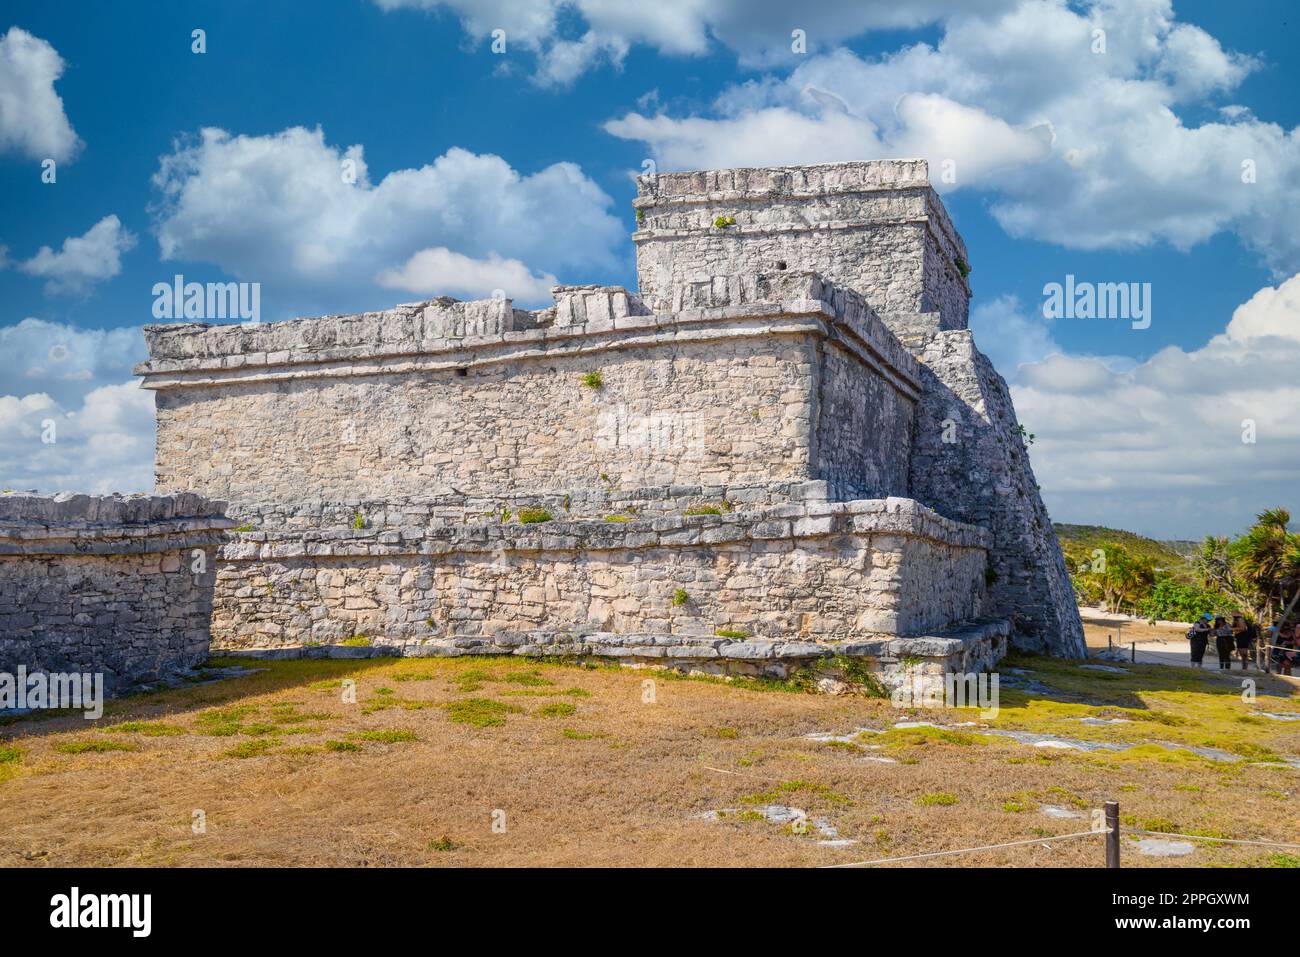 Le château, ruines mayas à Tulum, Riviera Maya, Yucatan, mer des Caraïbes Mexique Banque D'Images